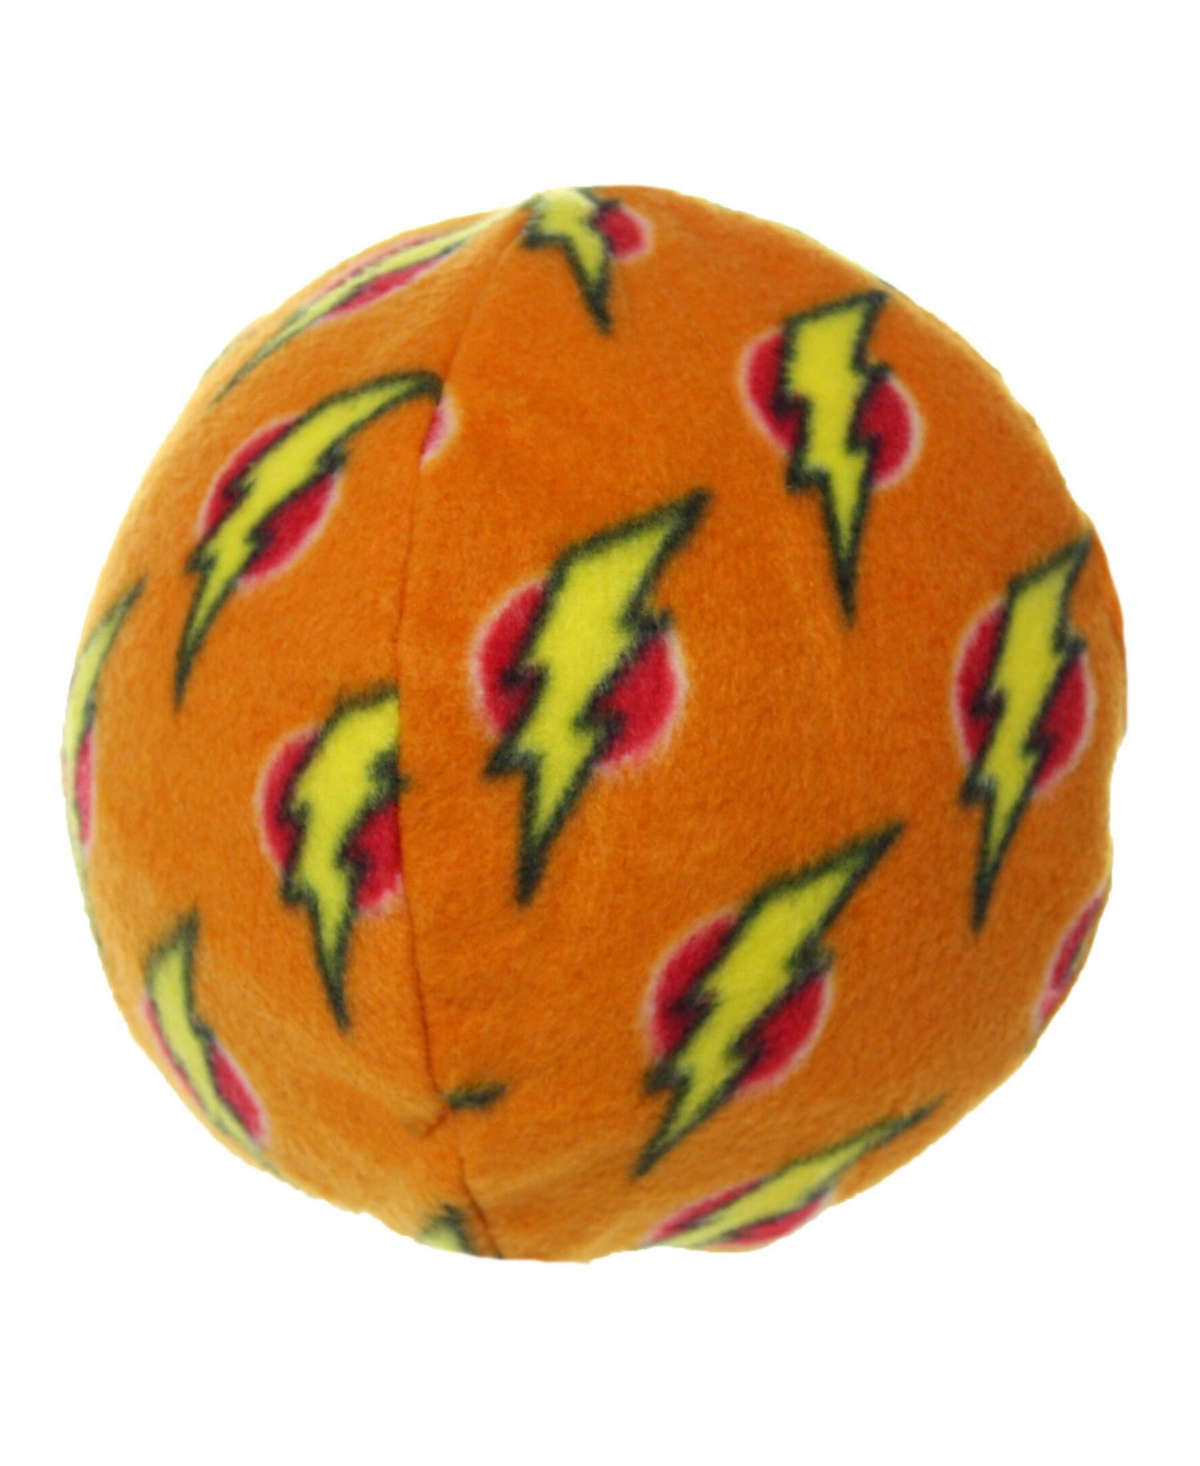 Ball Large Orange, Dog Toy - Orange